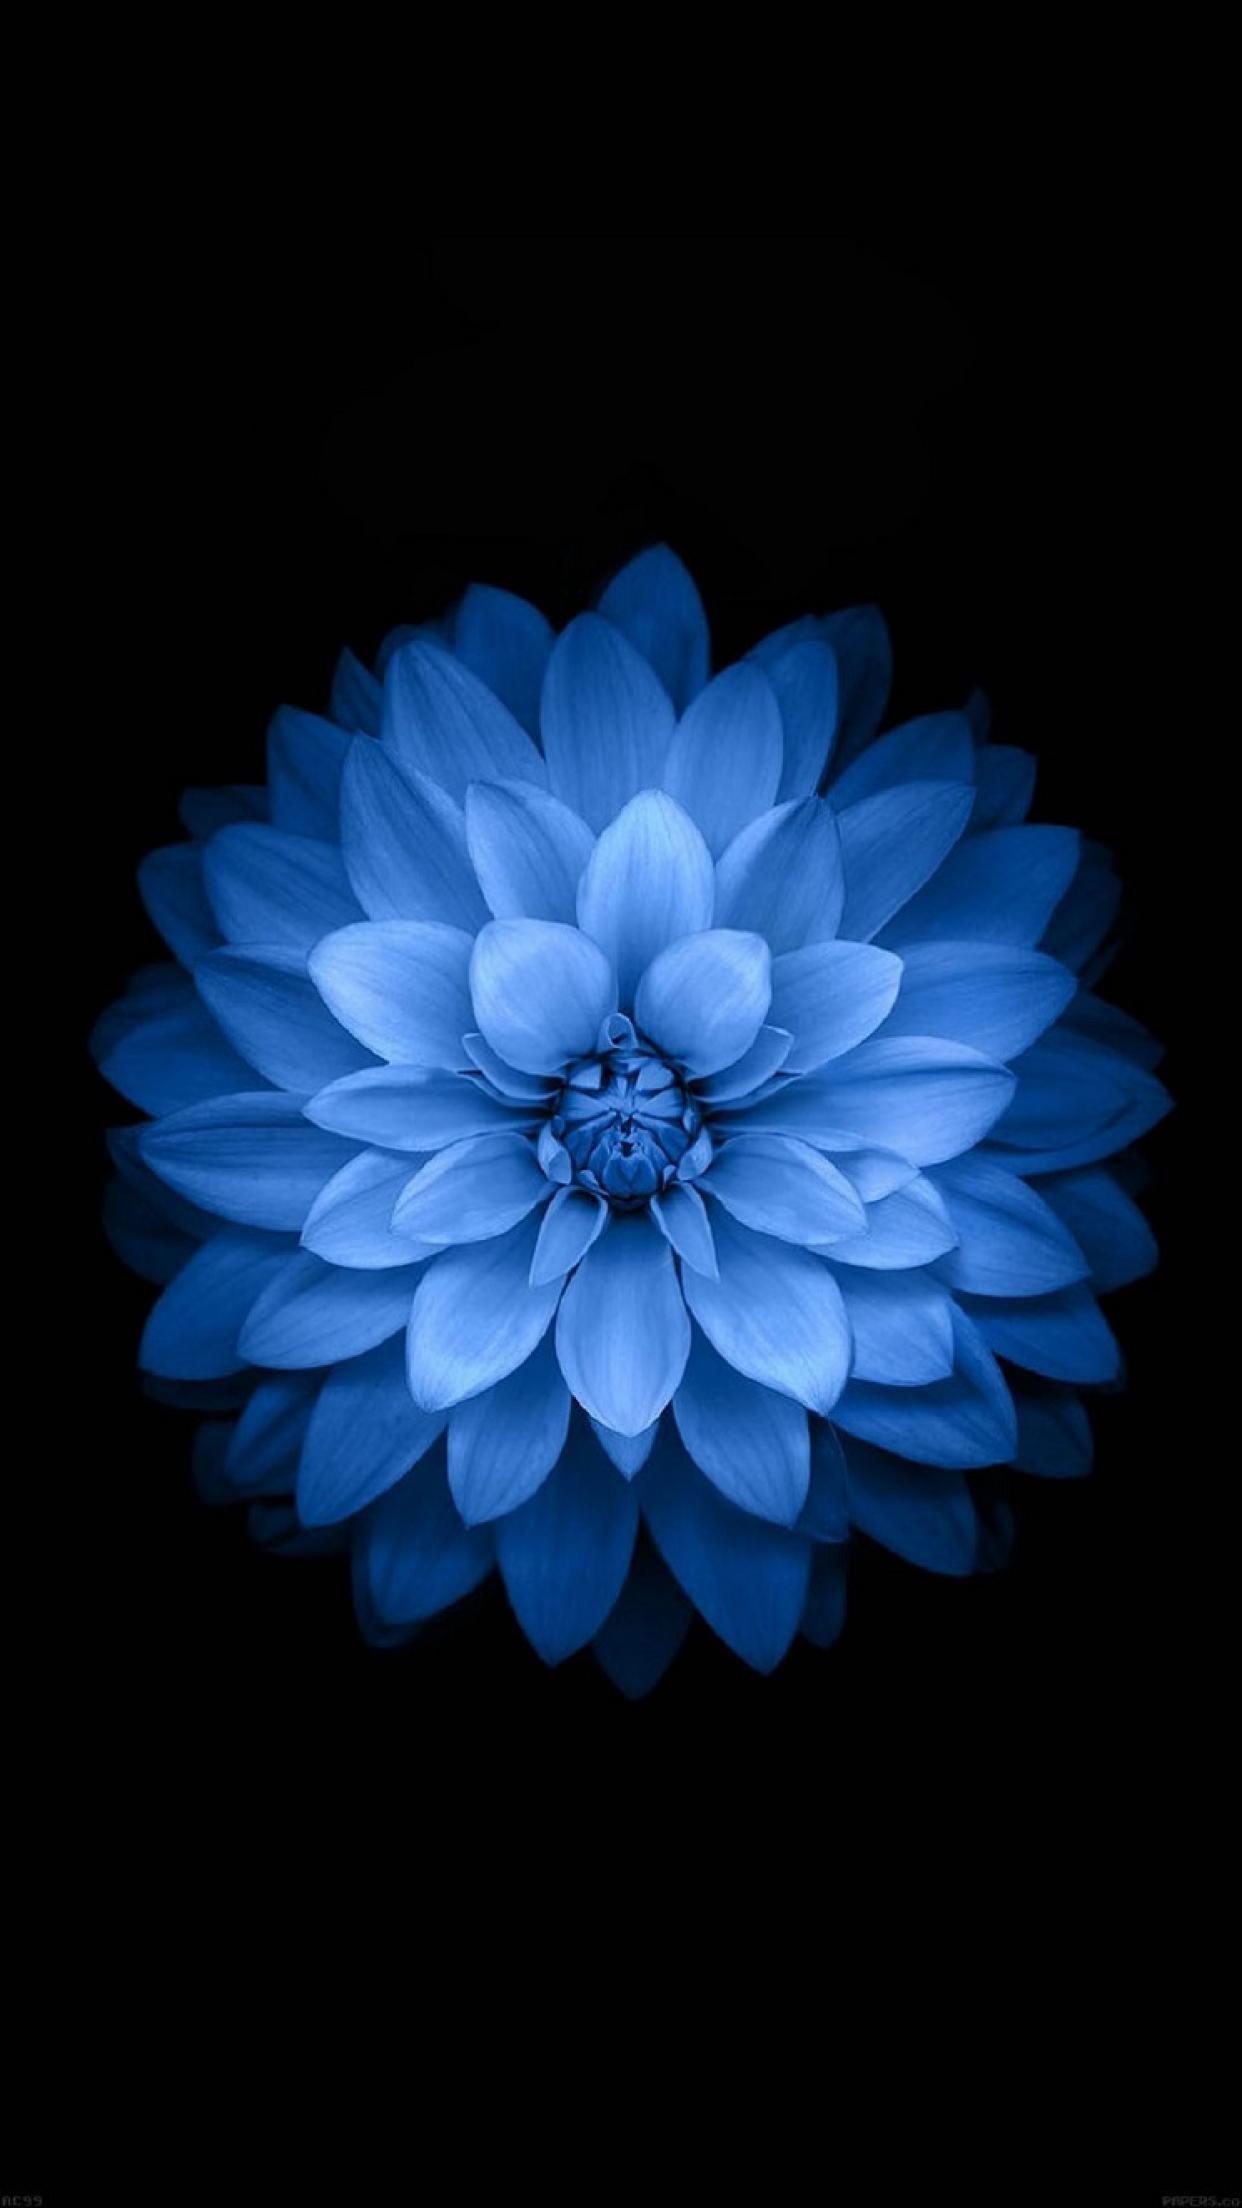 iPhone 6 Wallpaper. Flower iphone wallpaper, Blue flower wallpaper, Blue wallpaper iphone